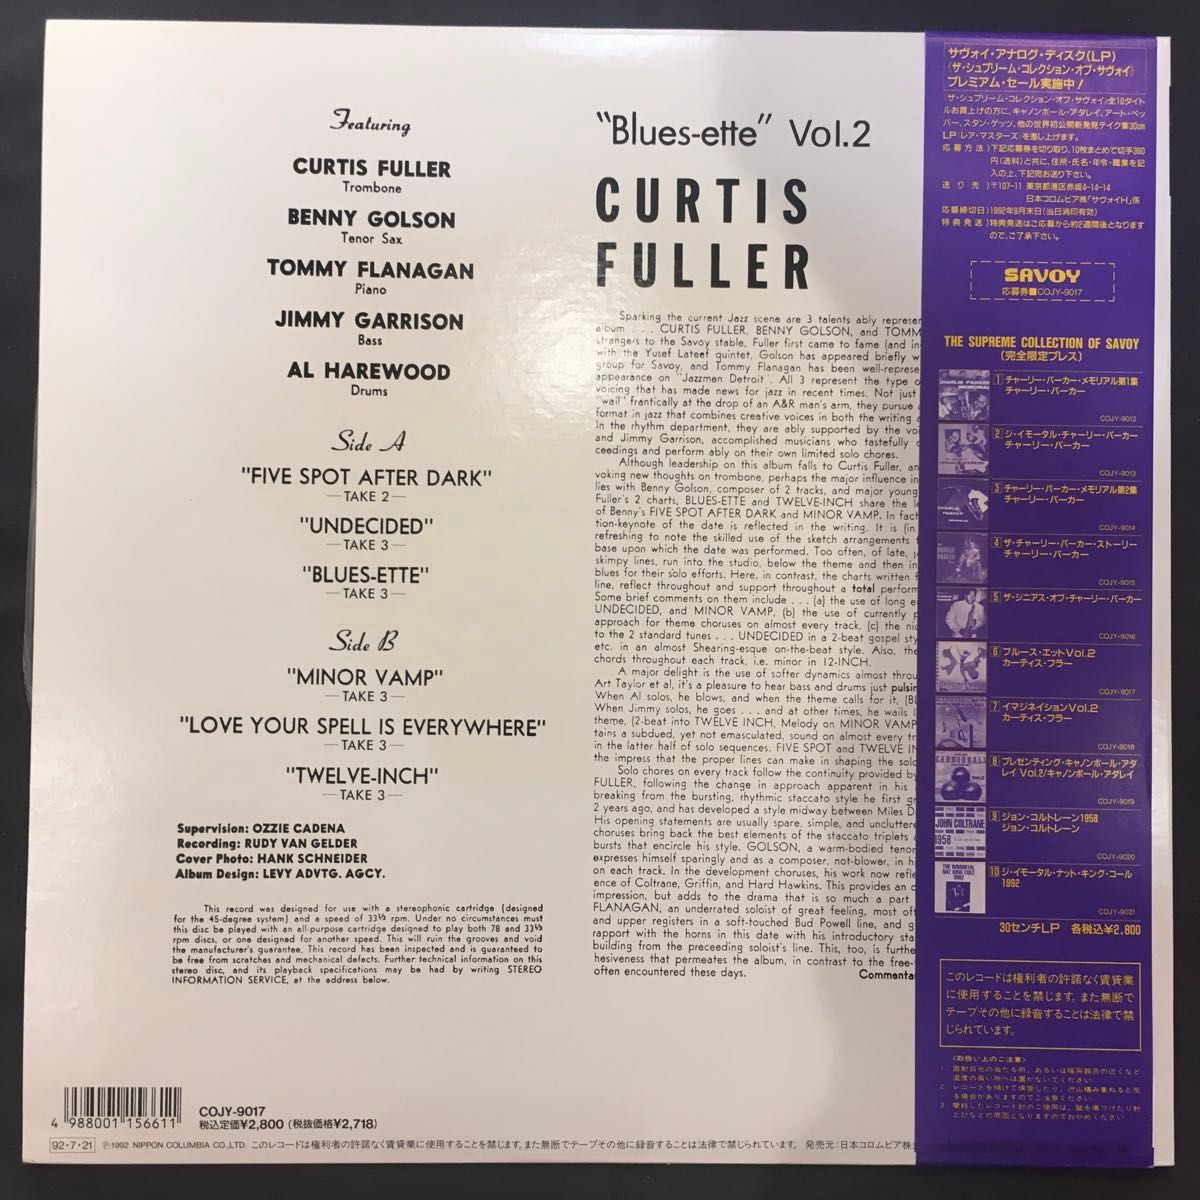 2枚まとめて "Blues-ette" Vol.2, GEORGE WALLINGTON JAZZ AT HOTCHKISS 美盤